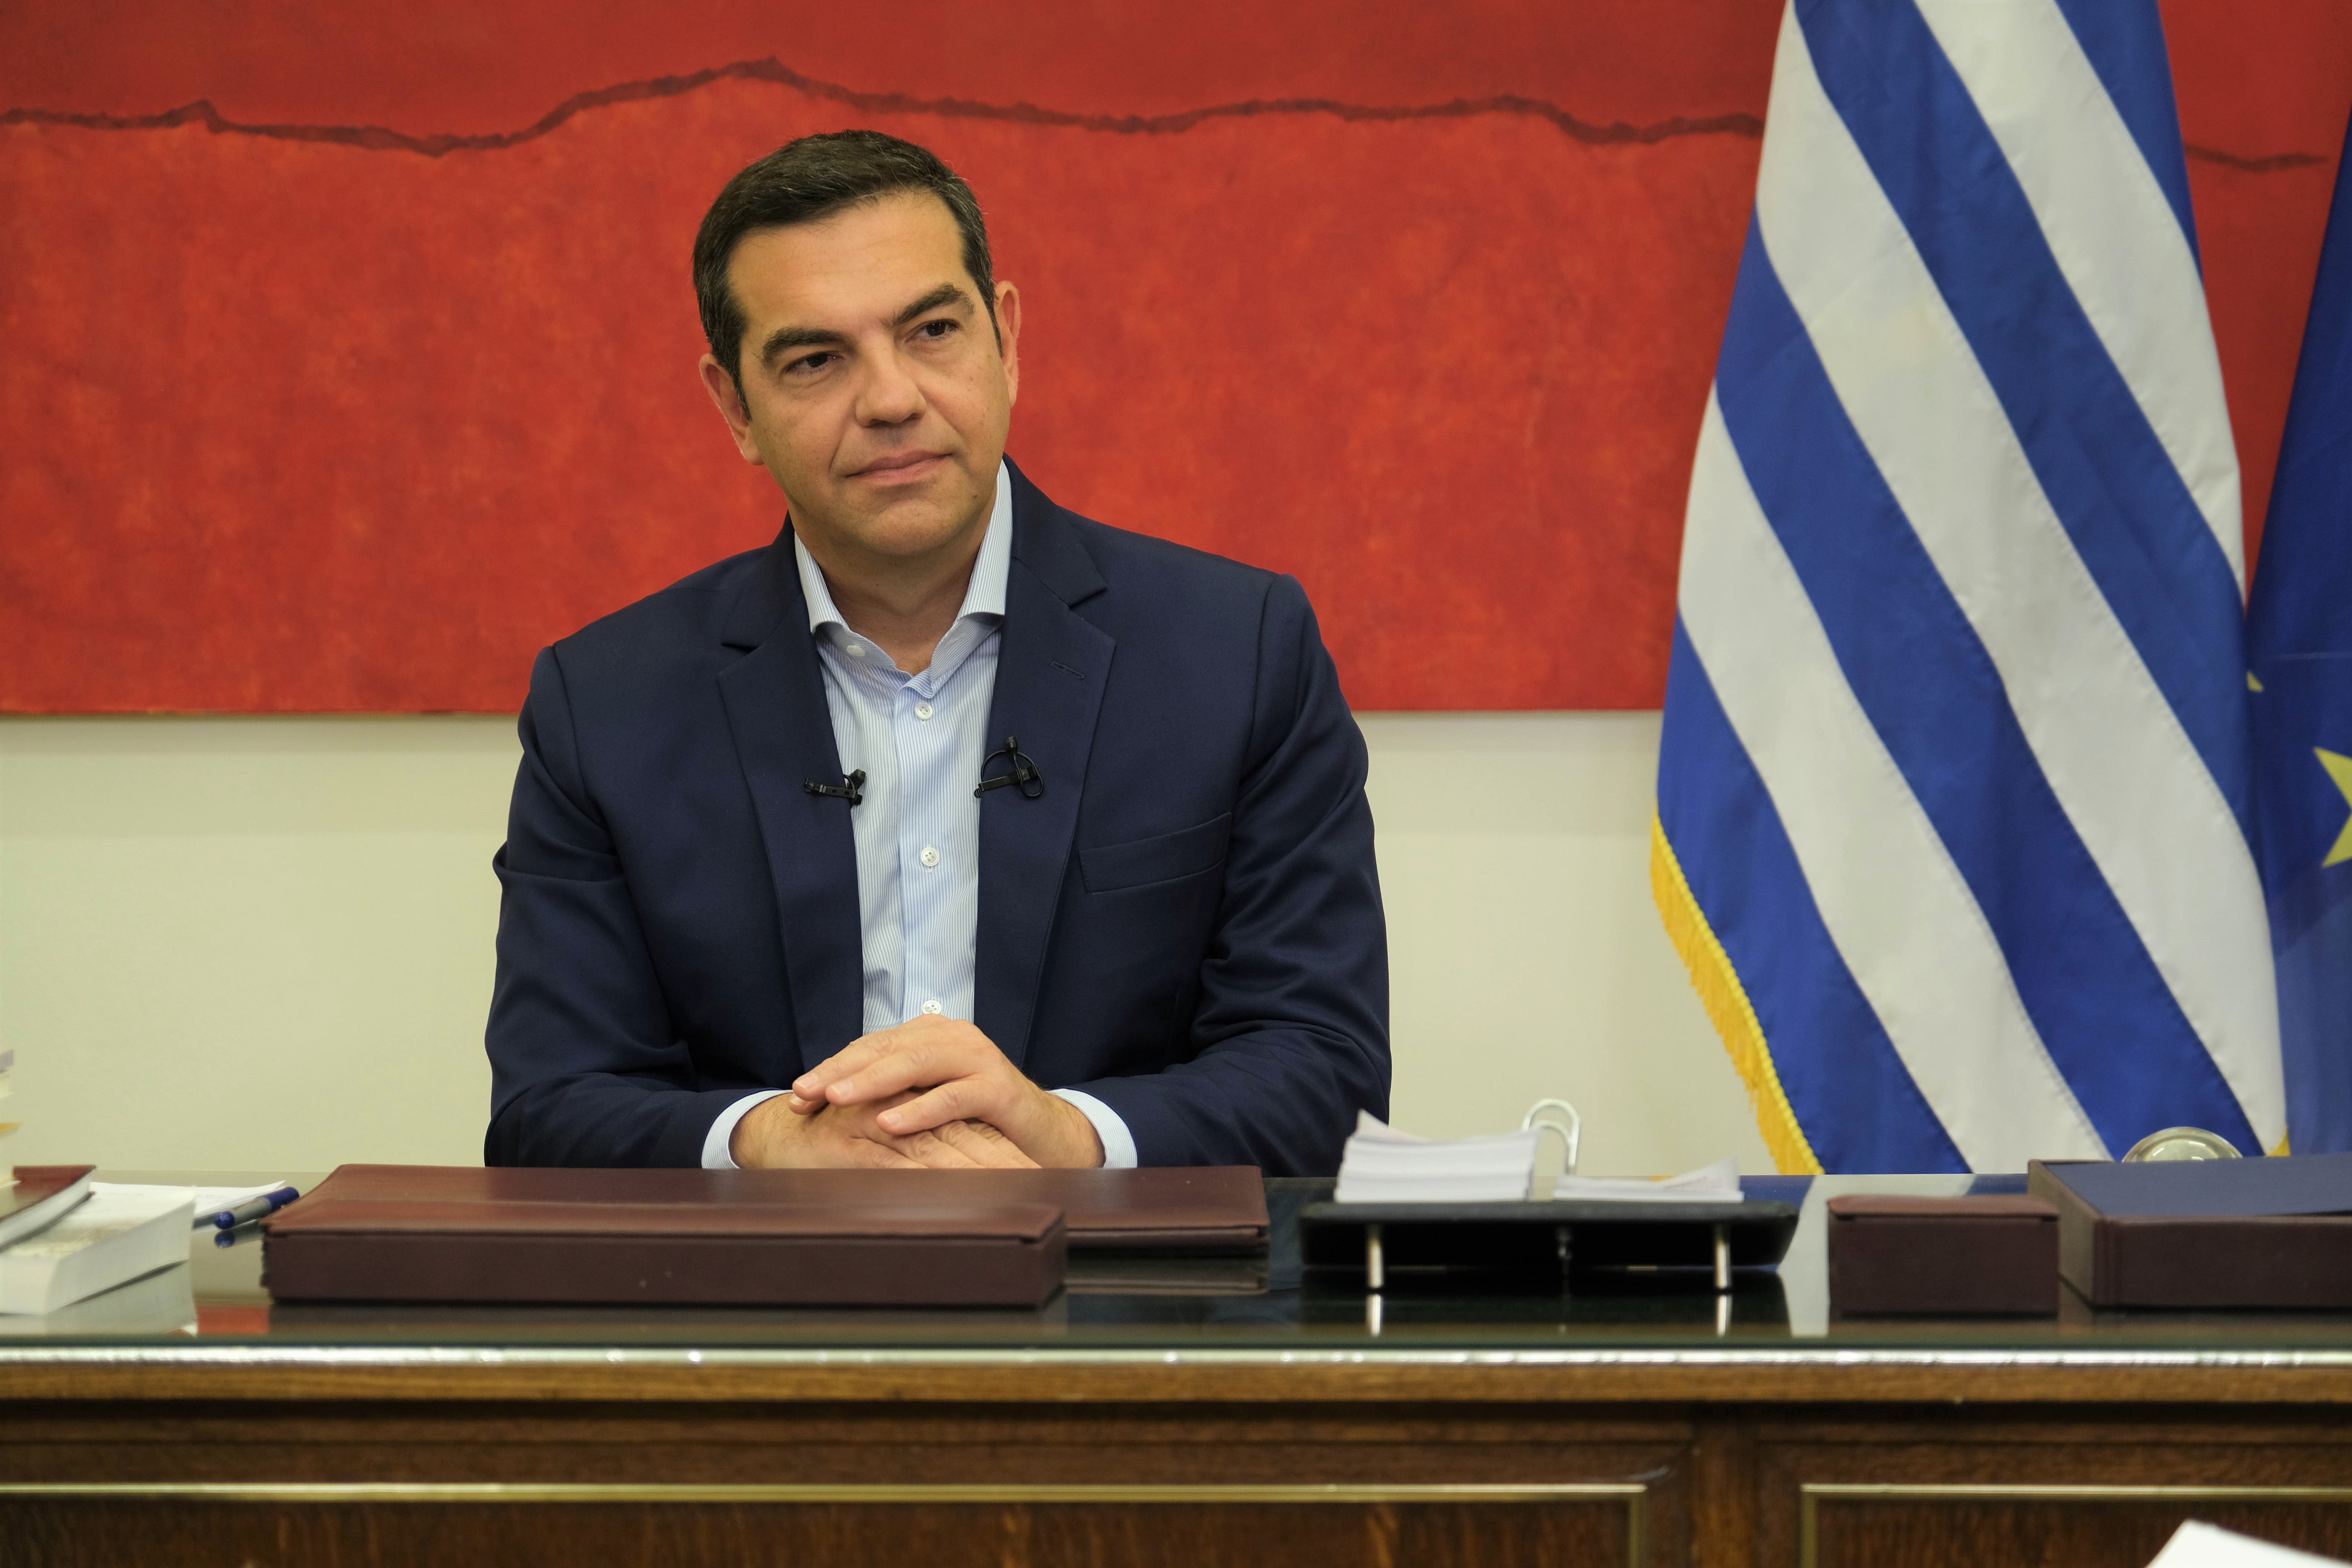 Συνέντευξη του προέδρου του ΣΥΡΙΖΑ-Προοδευτική Συμμαχία, Αλέξη Τσίπρα, στο κεντρικό δελτίο ειδήσεων του Star Channel